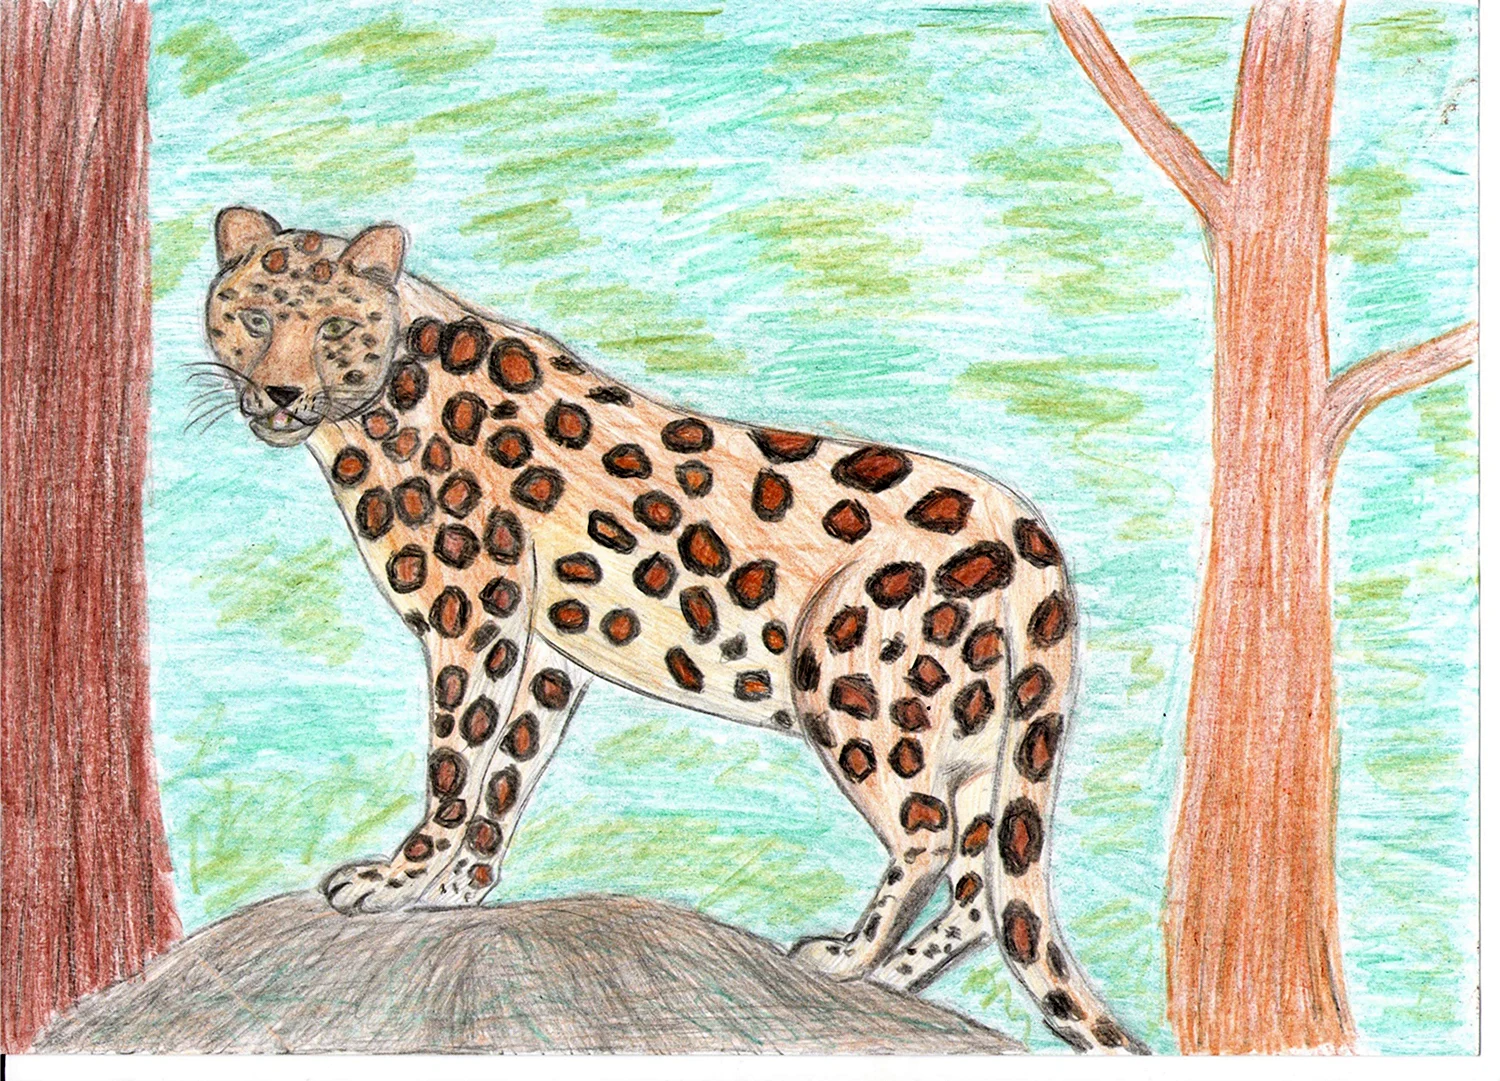 Раскраска Леопард дальневосточный амурский распечатать, скачать, раскрасить онлайн